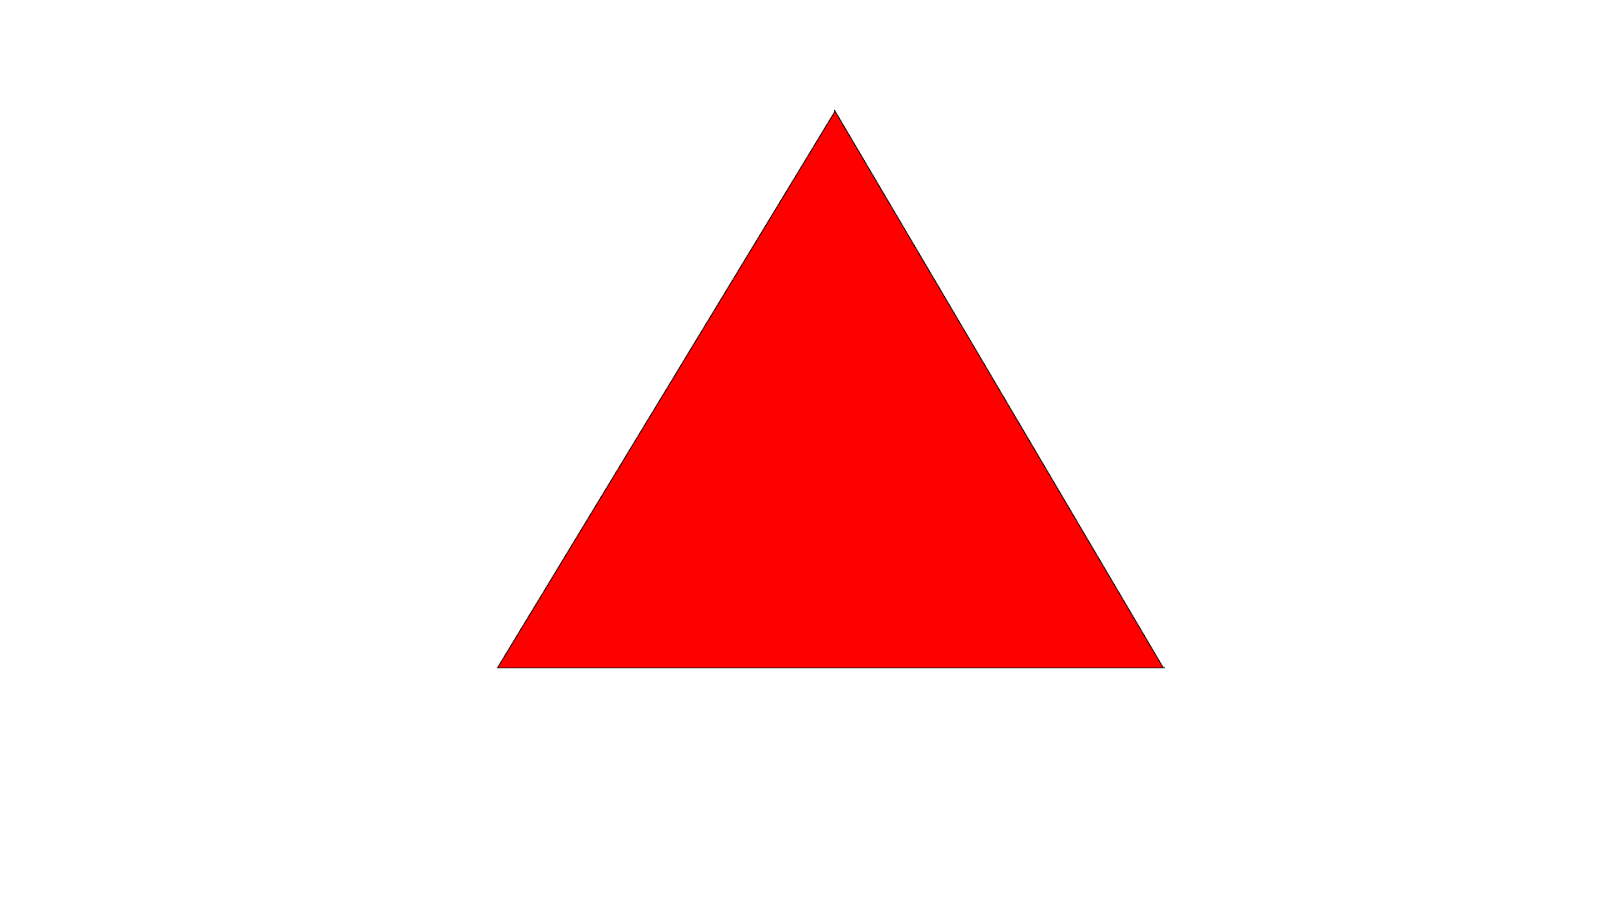 https://cdn.lowgif.com/small/0bfbdfe9b7cce8af-red-arrow-icon-gif.gif